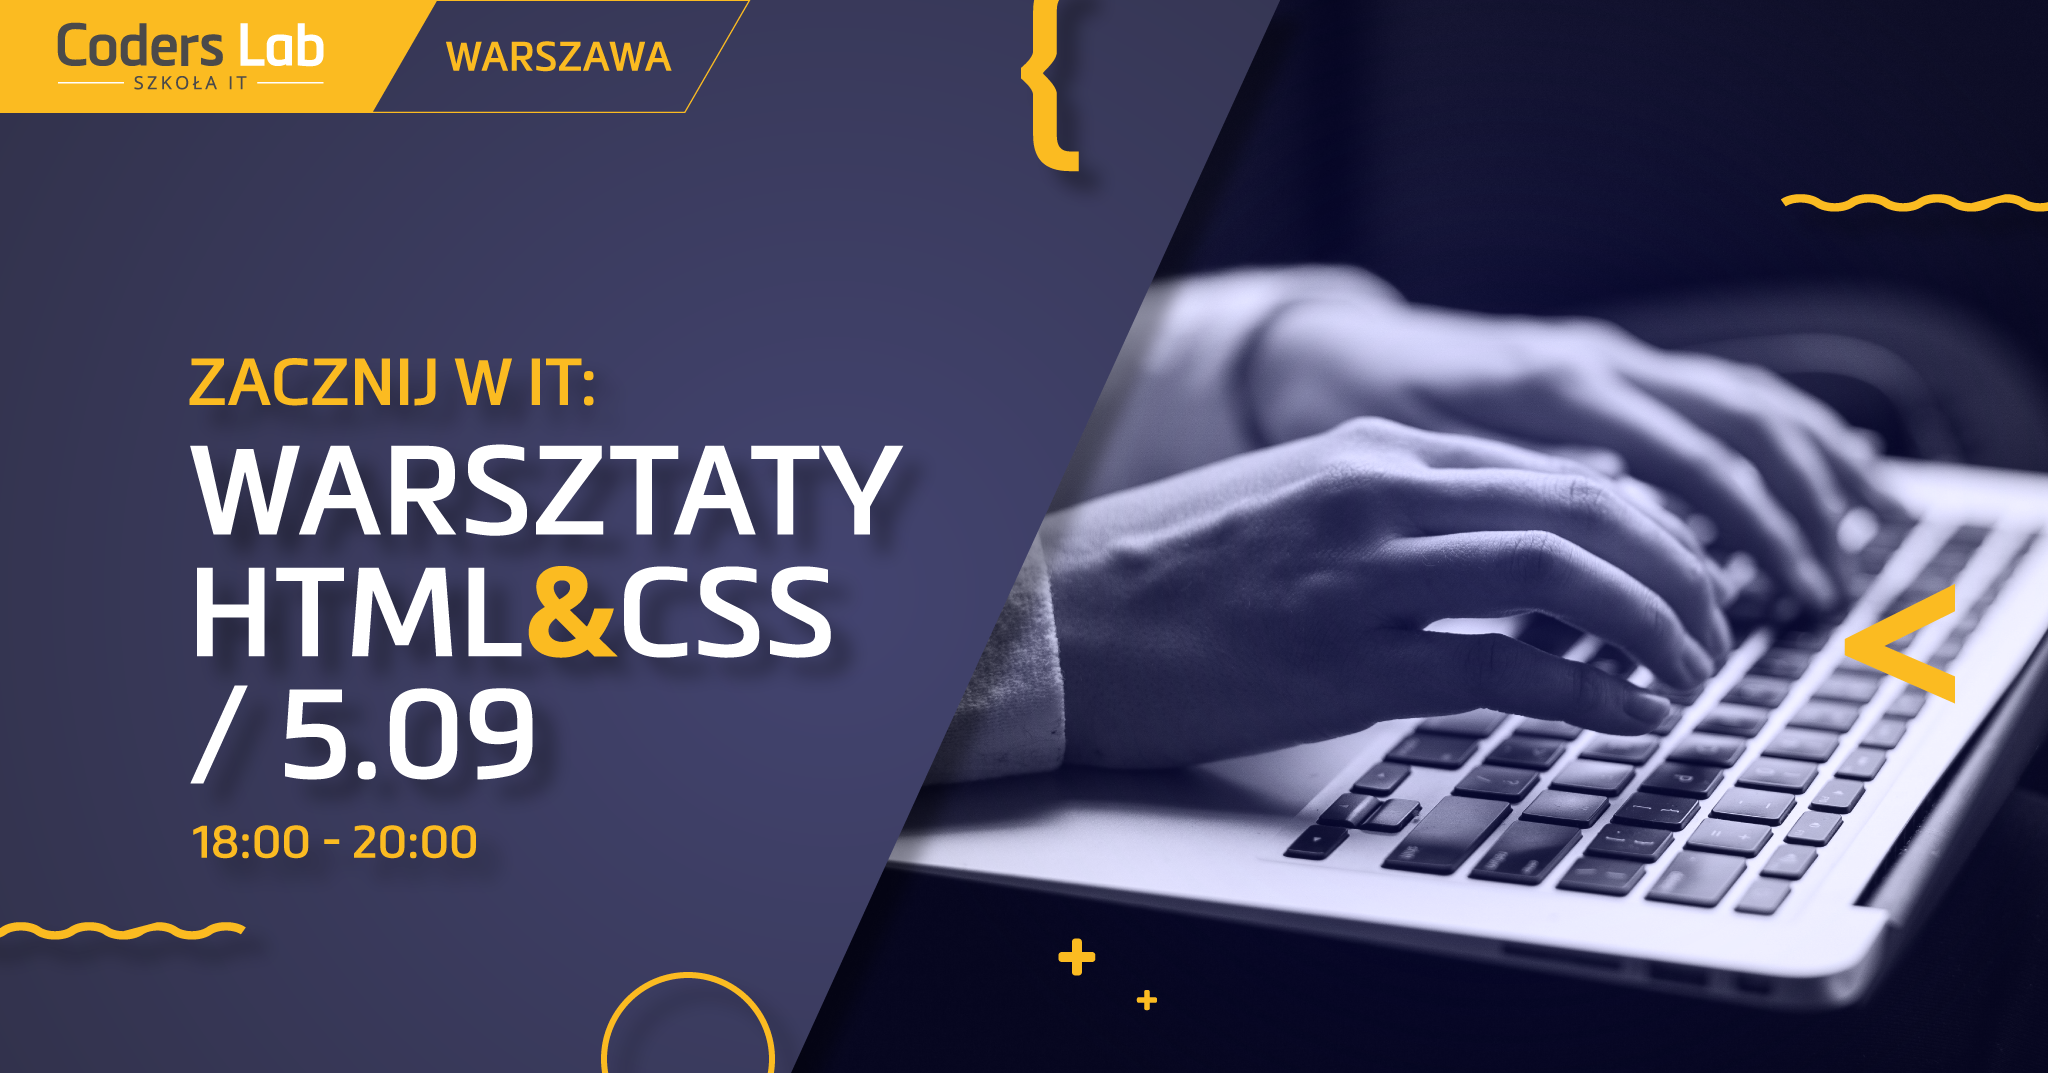 coders-lab-szkola-it-zacznij-w-it-warsztaty-html-css-w-warszawie-wrzesien-2018